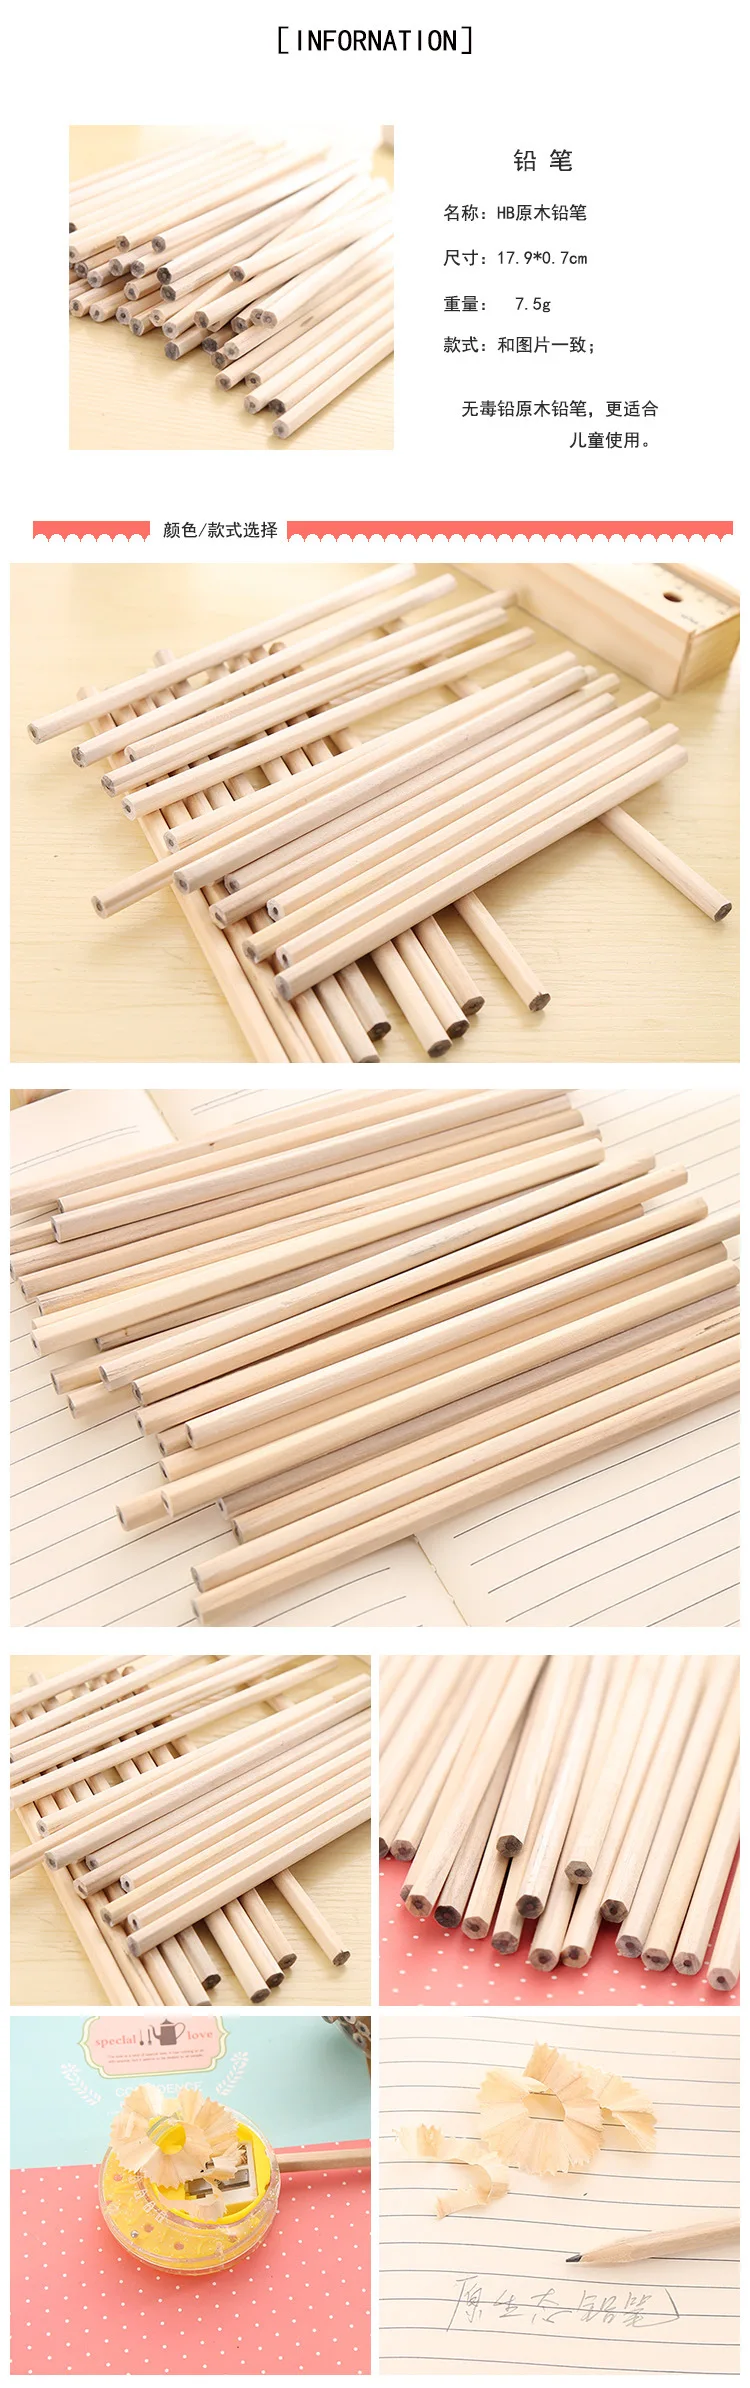 Coloffice 10 шт./партия цветной деревянный музыкальный карандаш для заметок стандартные канцелярские карандашный рисунок живопись Writng школьные офисные принадлежности